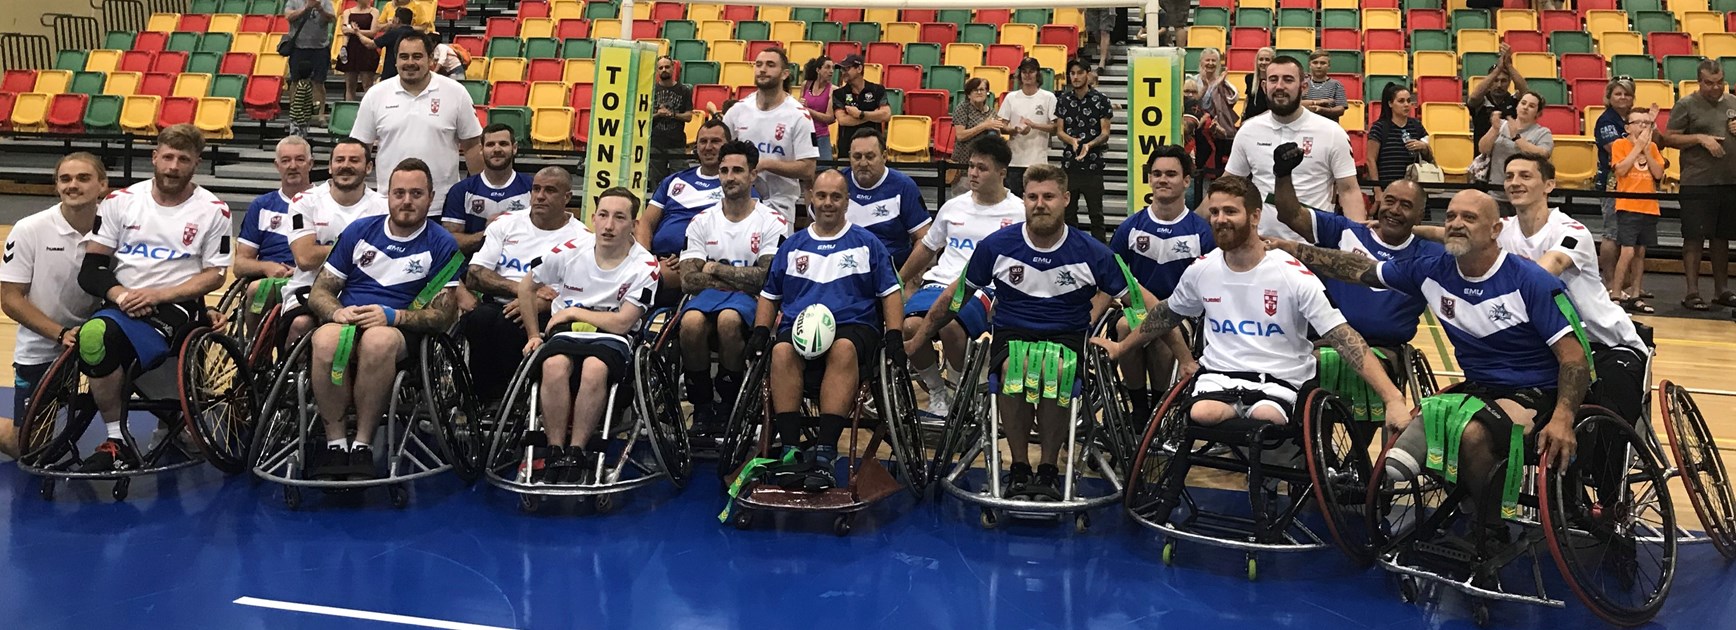 NQ Marlins Wheelchair team gallant against touring English